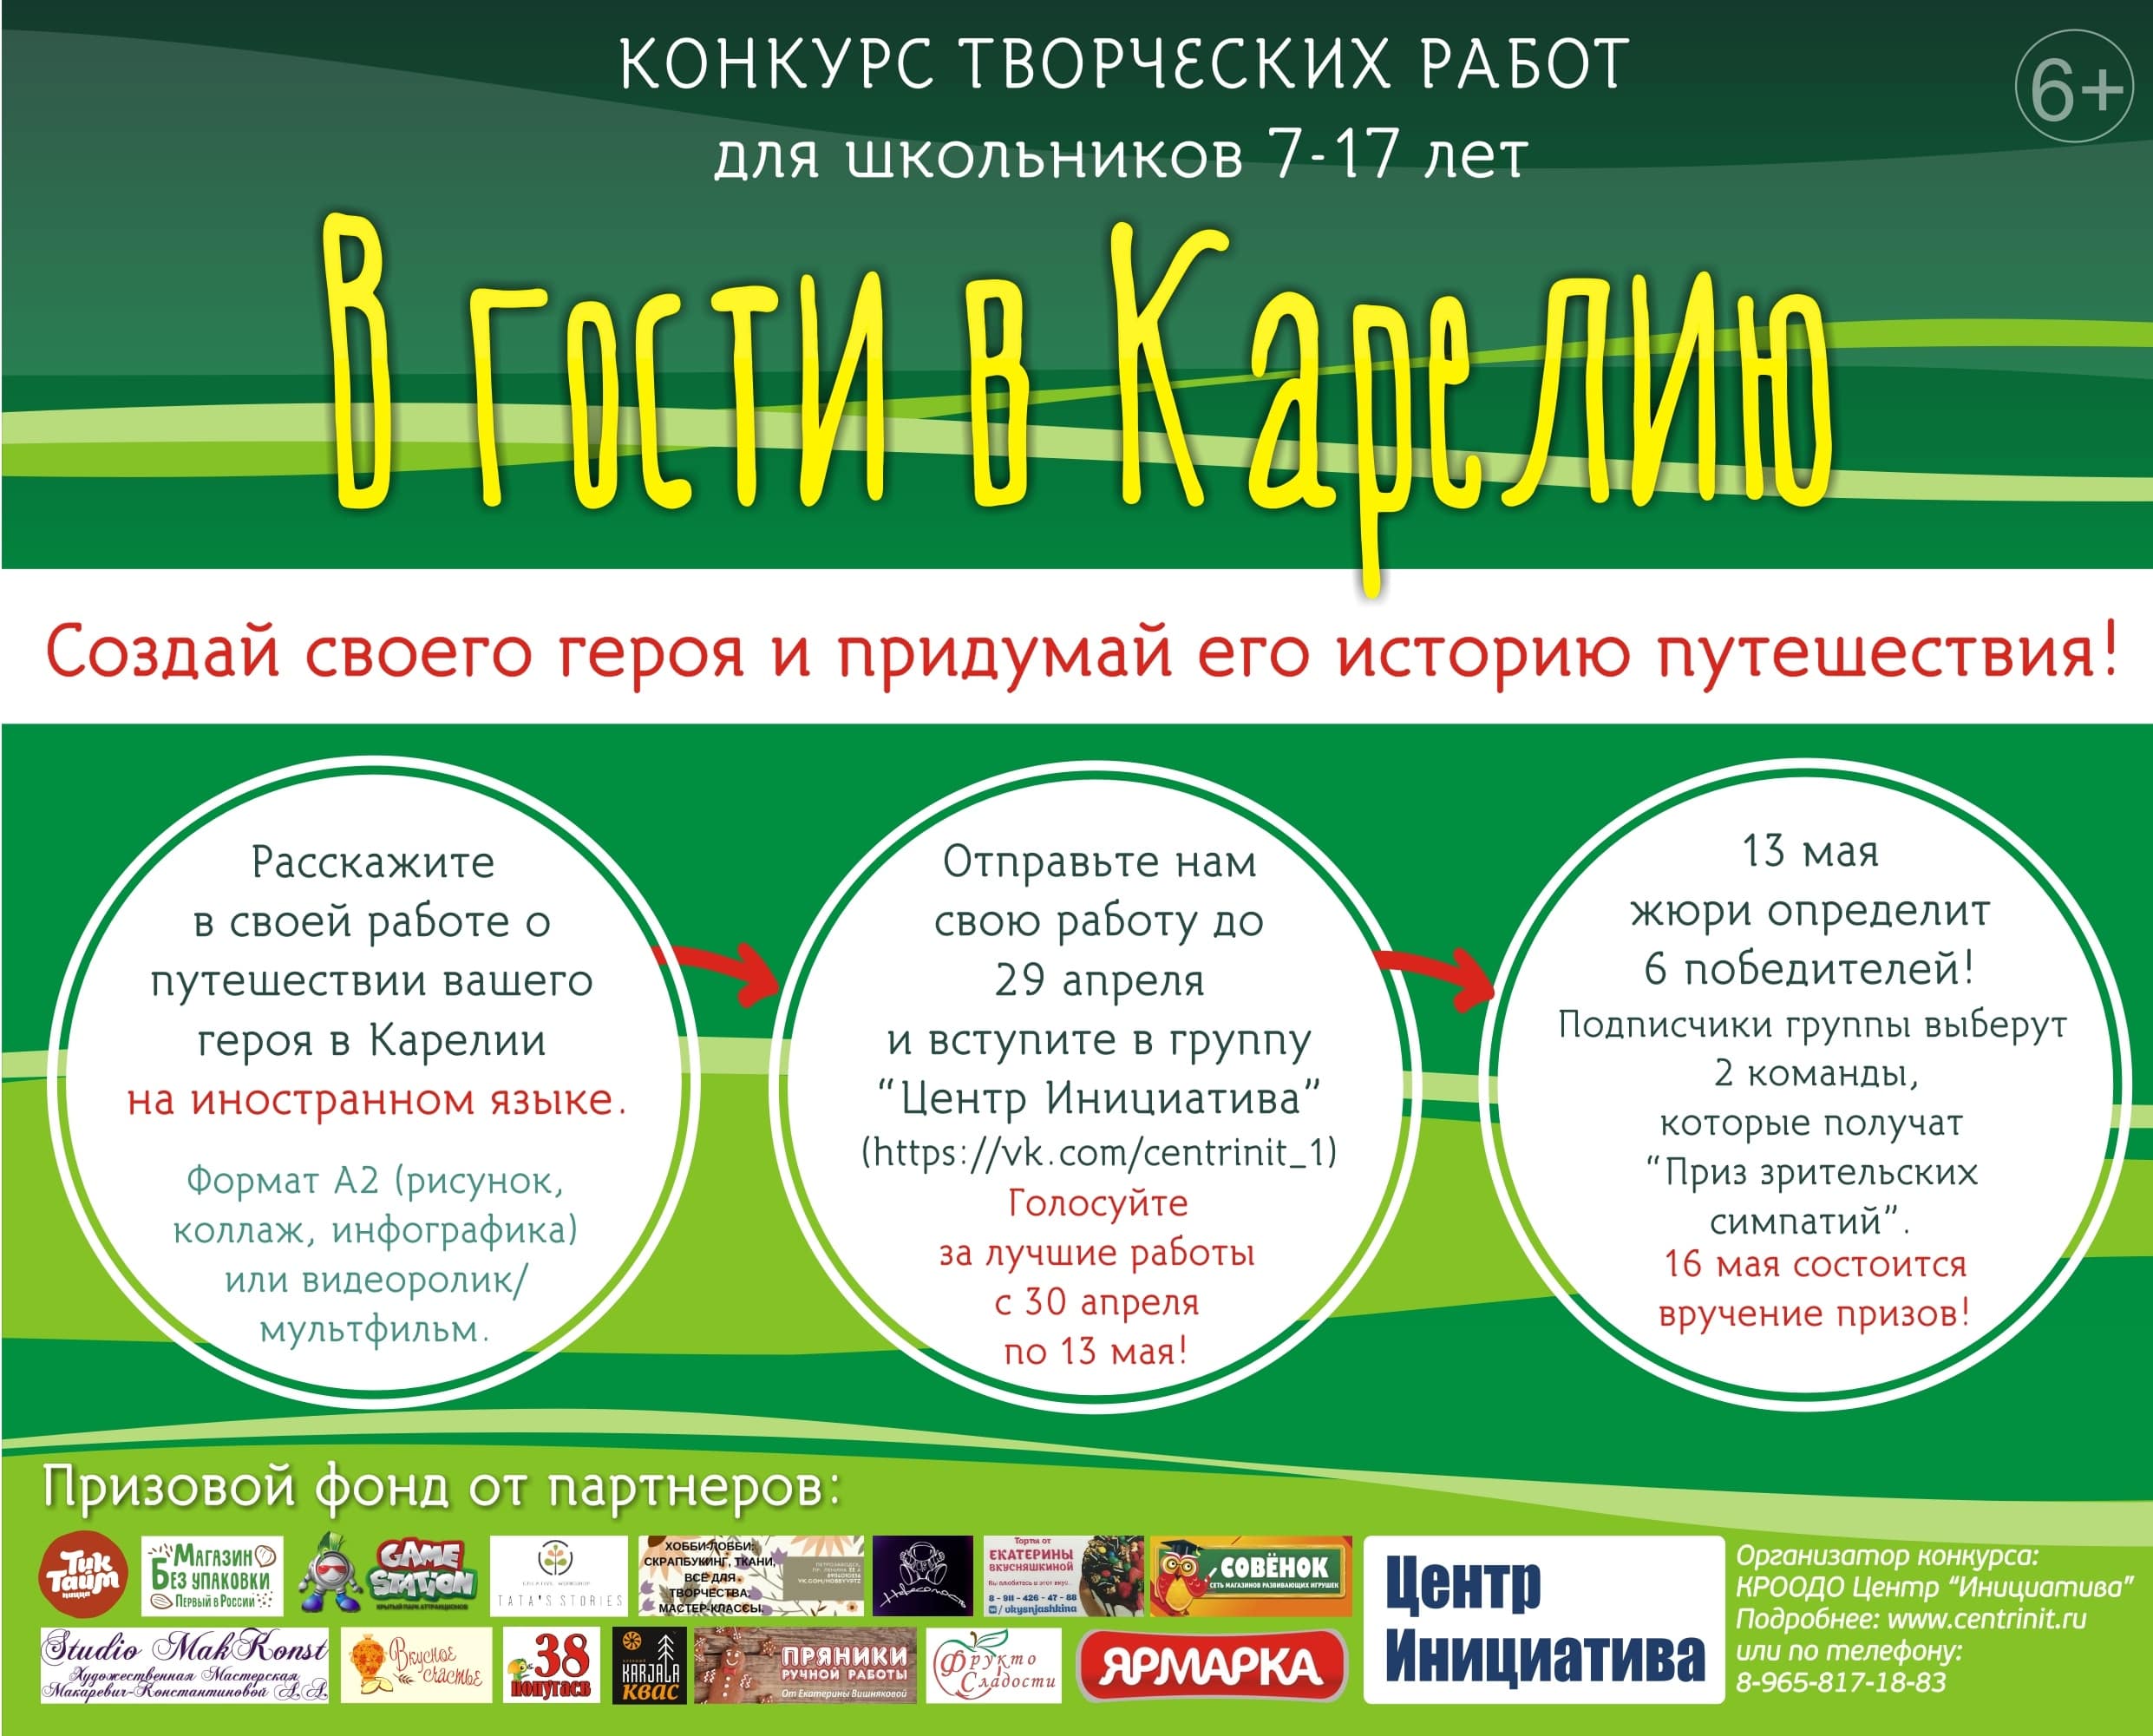 Конкурс "В гости в Карелию" для школьников 7-17 лет Республики Карелия